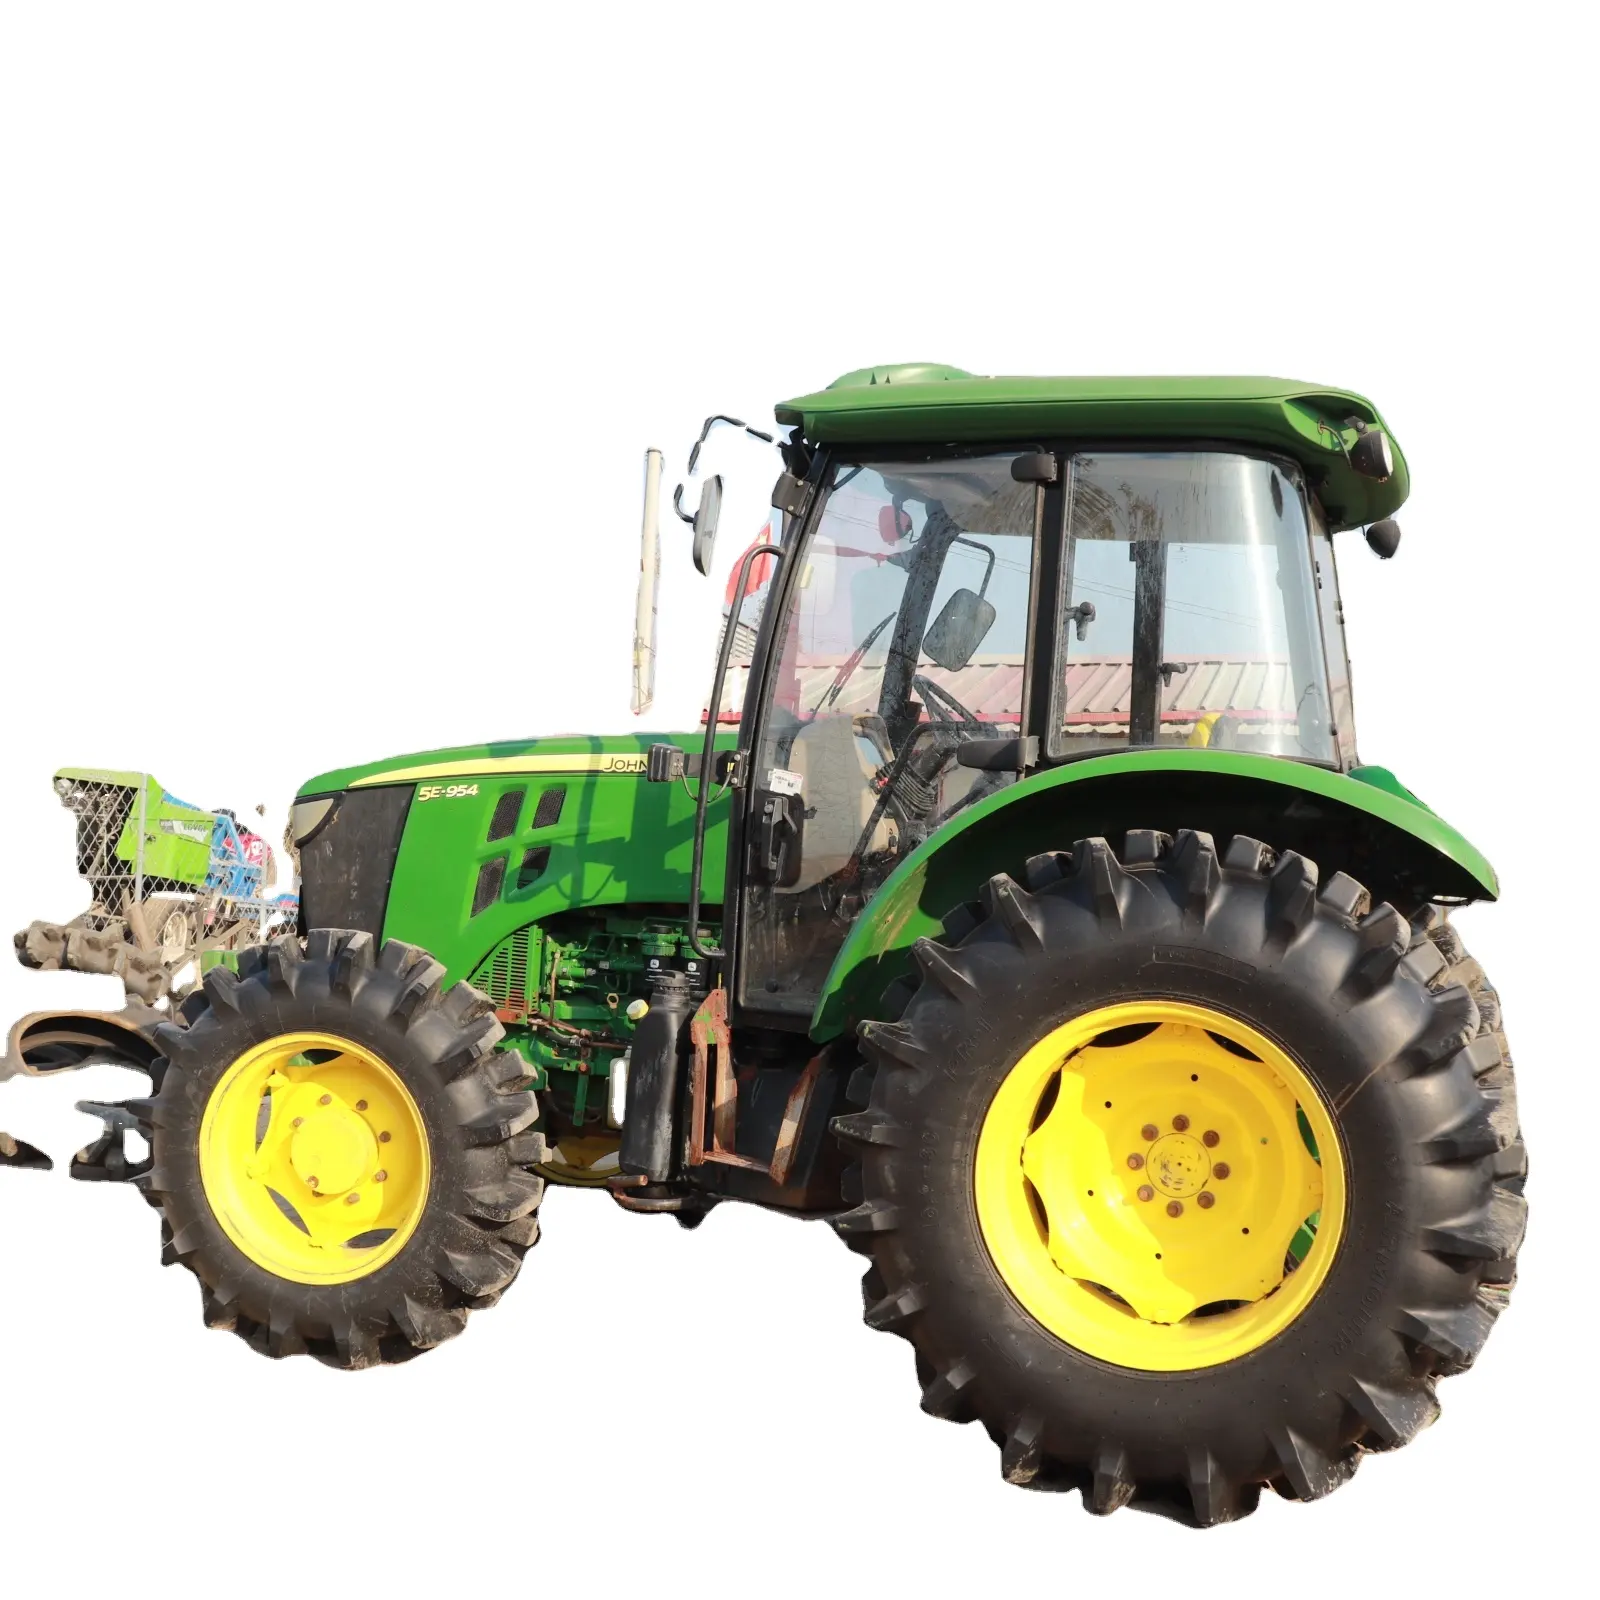 Farm gebrauchte Traktor Fabrik preis kleiner Traktor Offroad-Typ billiger Traktor hergestellt in FRANKREICH AUTHENTHIC JOHN FARM DEER